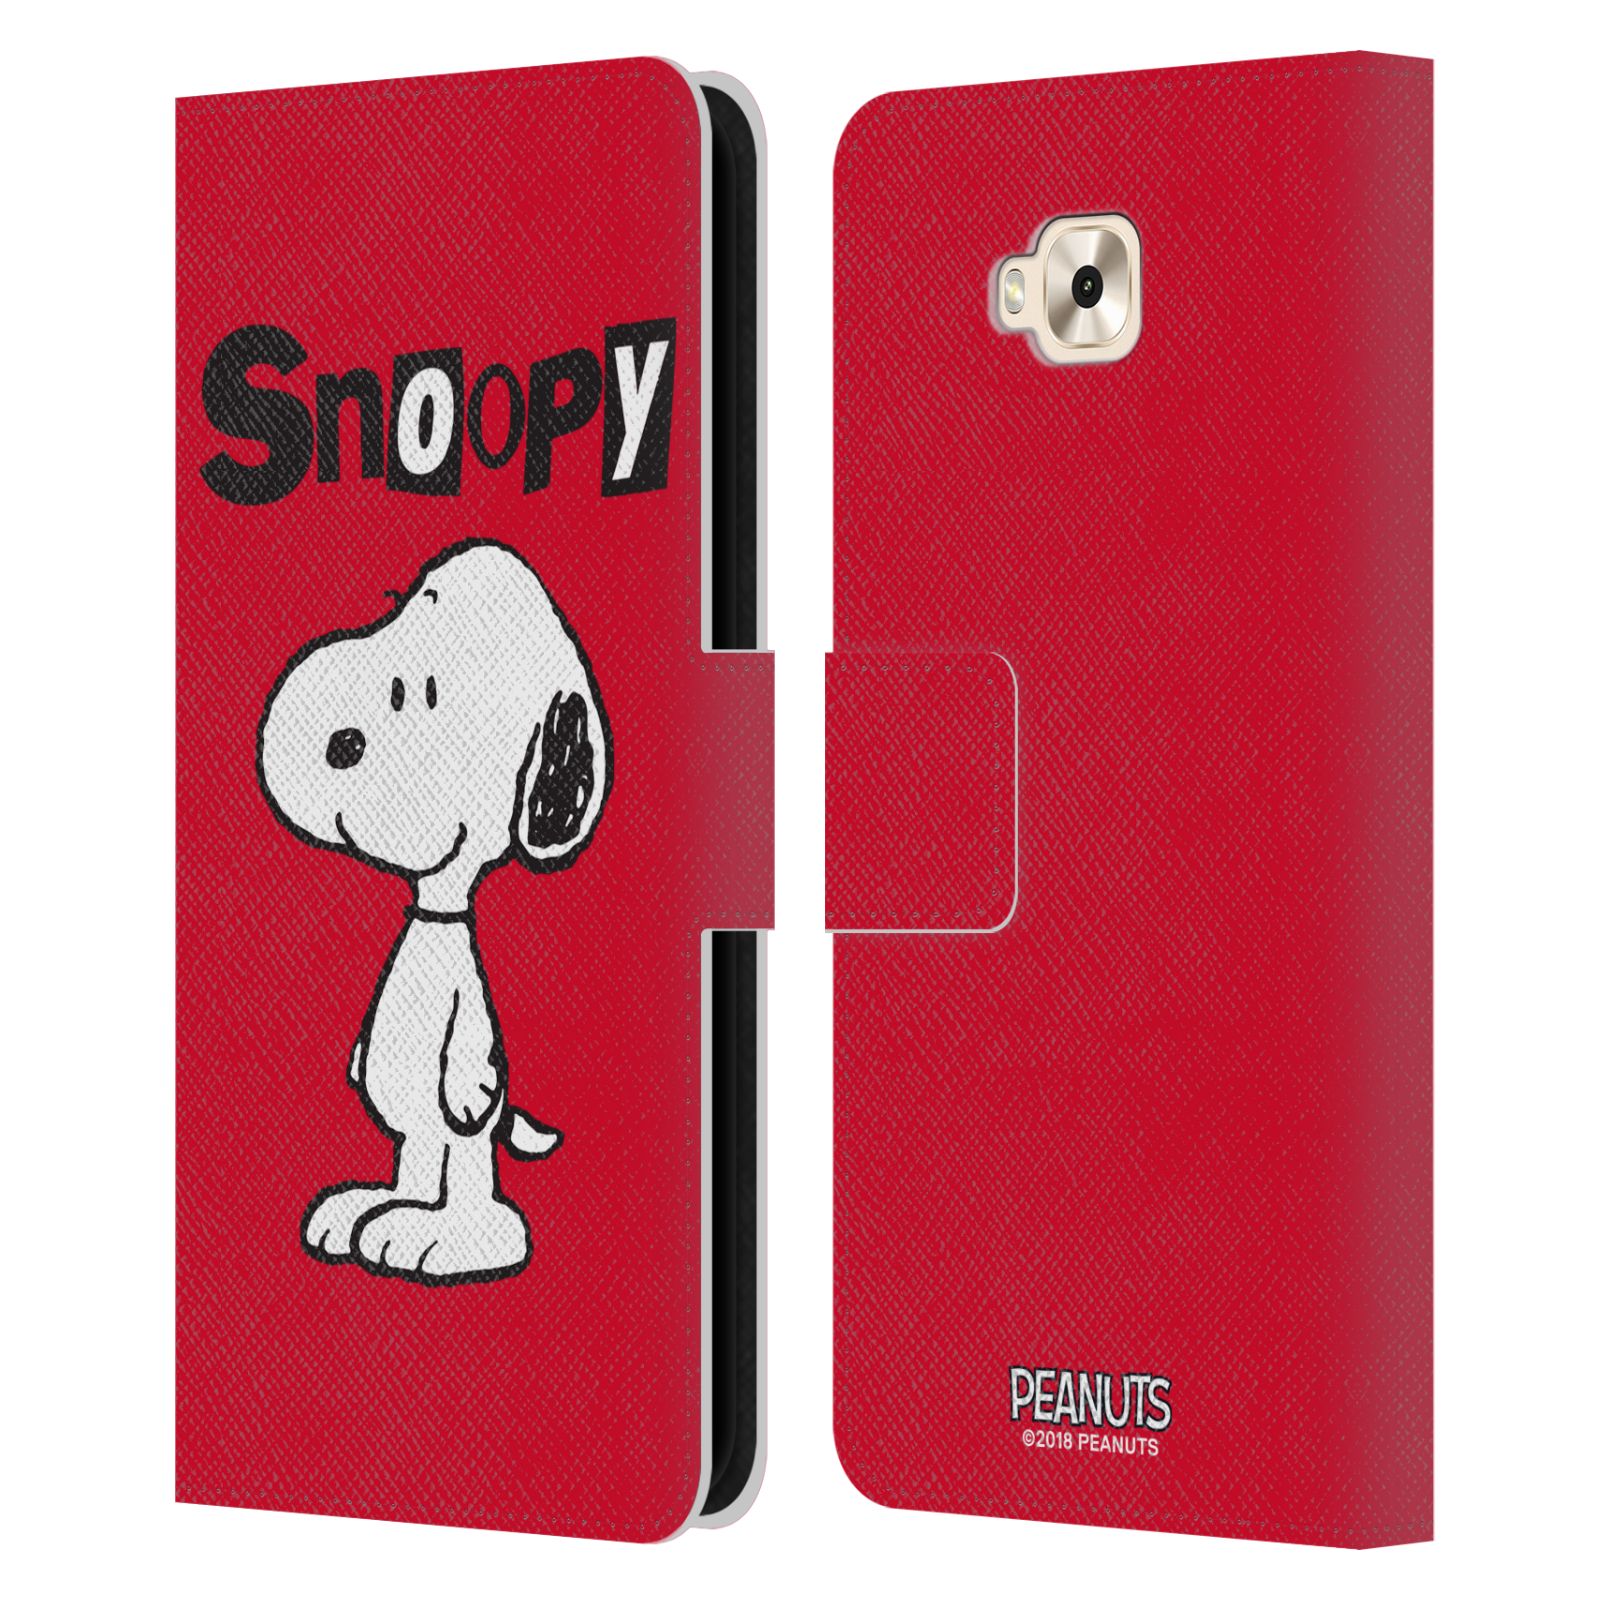 Pouzdro na mobil Asus Zenfone 4 Selfie ZD553KL  - HEAD CASE - Peanuts - Snoopy červená